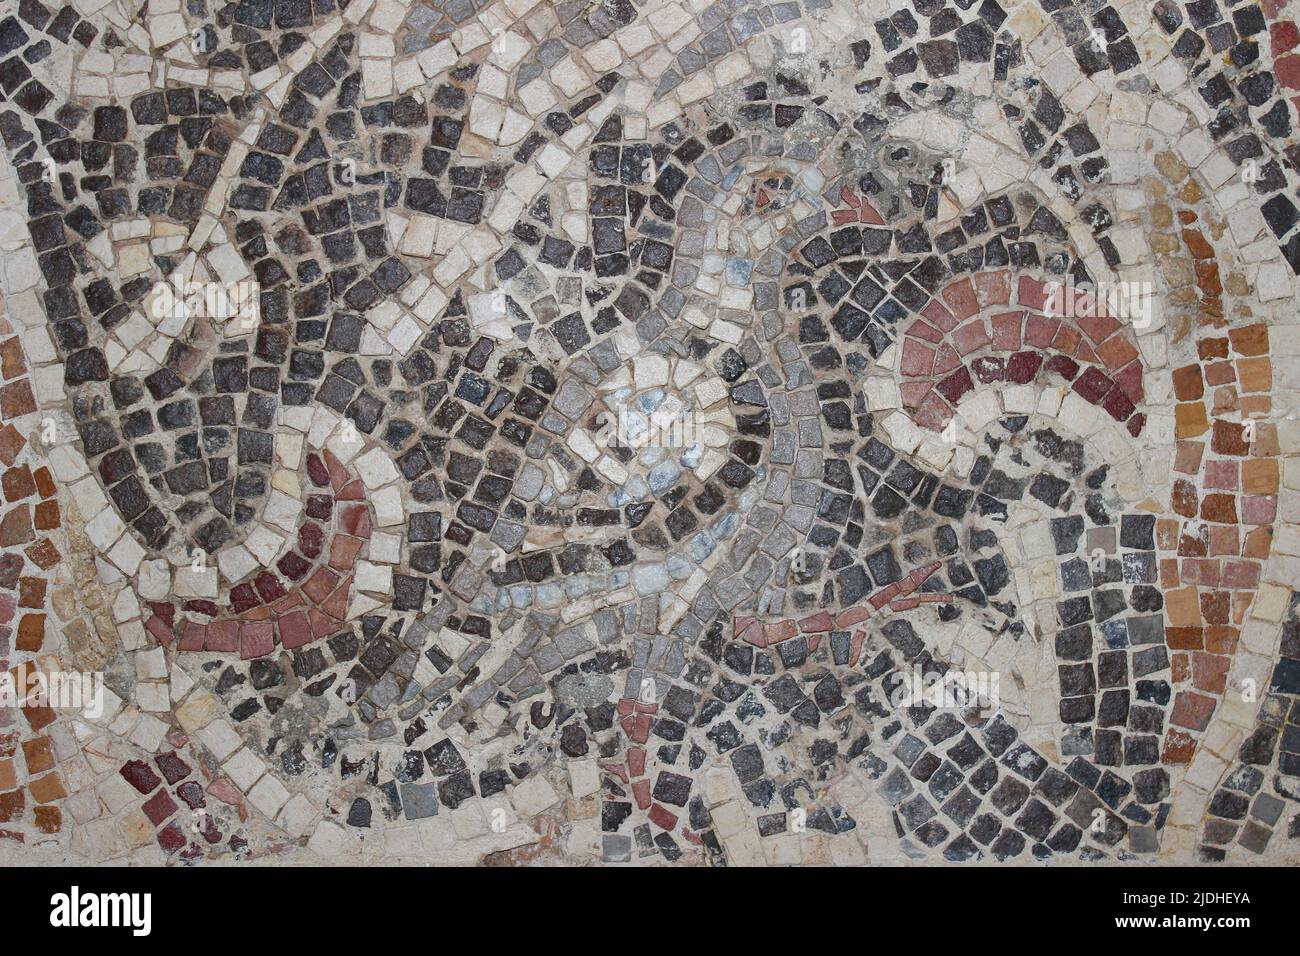 Paloma - detalle de mosaico de la Iglesia de la Virgen María, Madaba siglo 6th Foto de stock